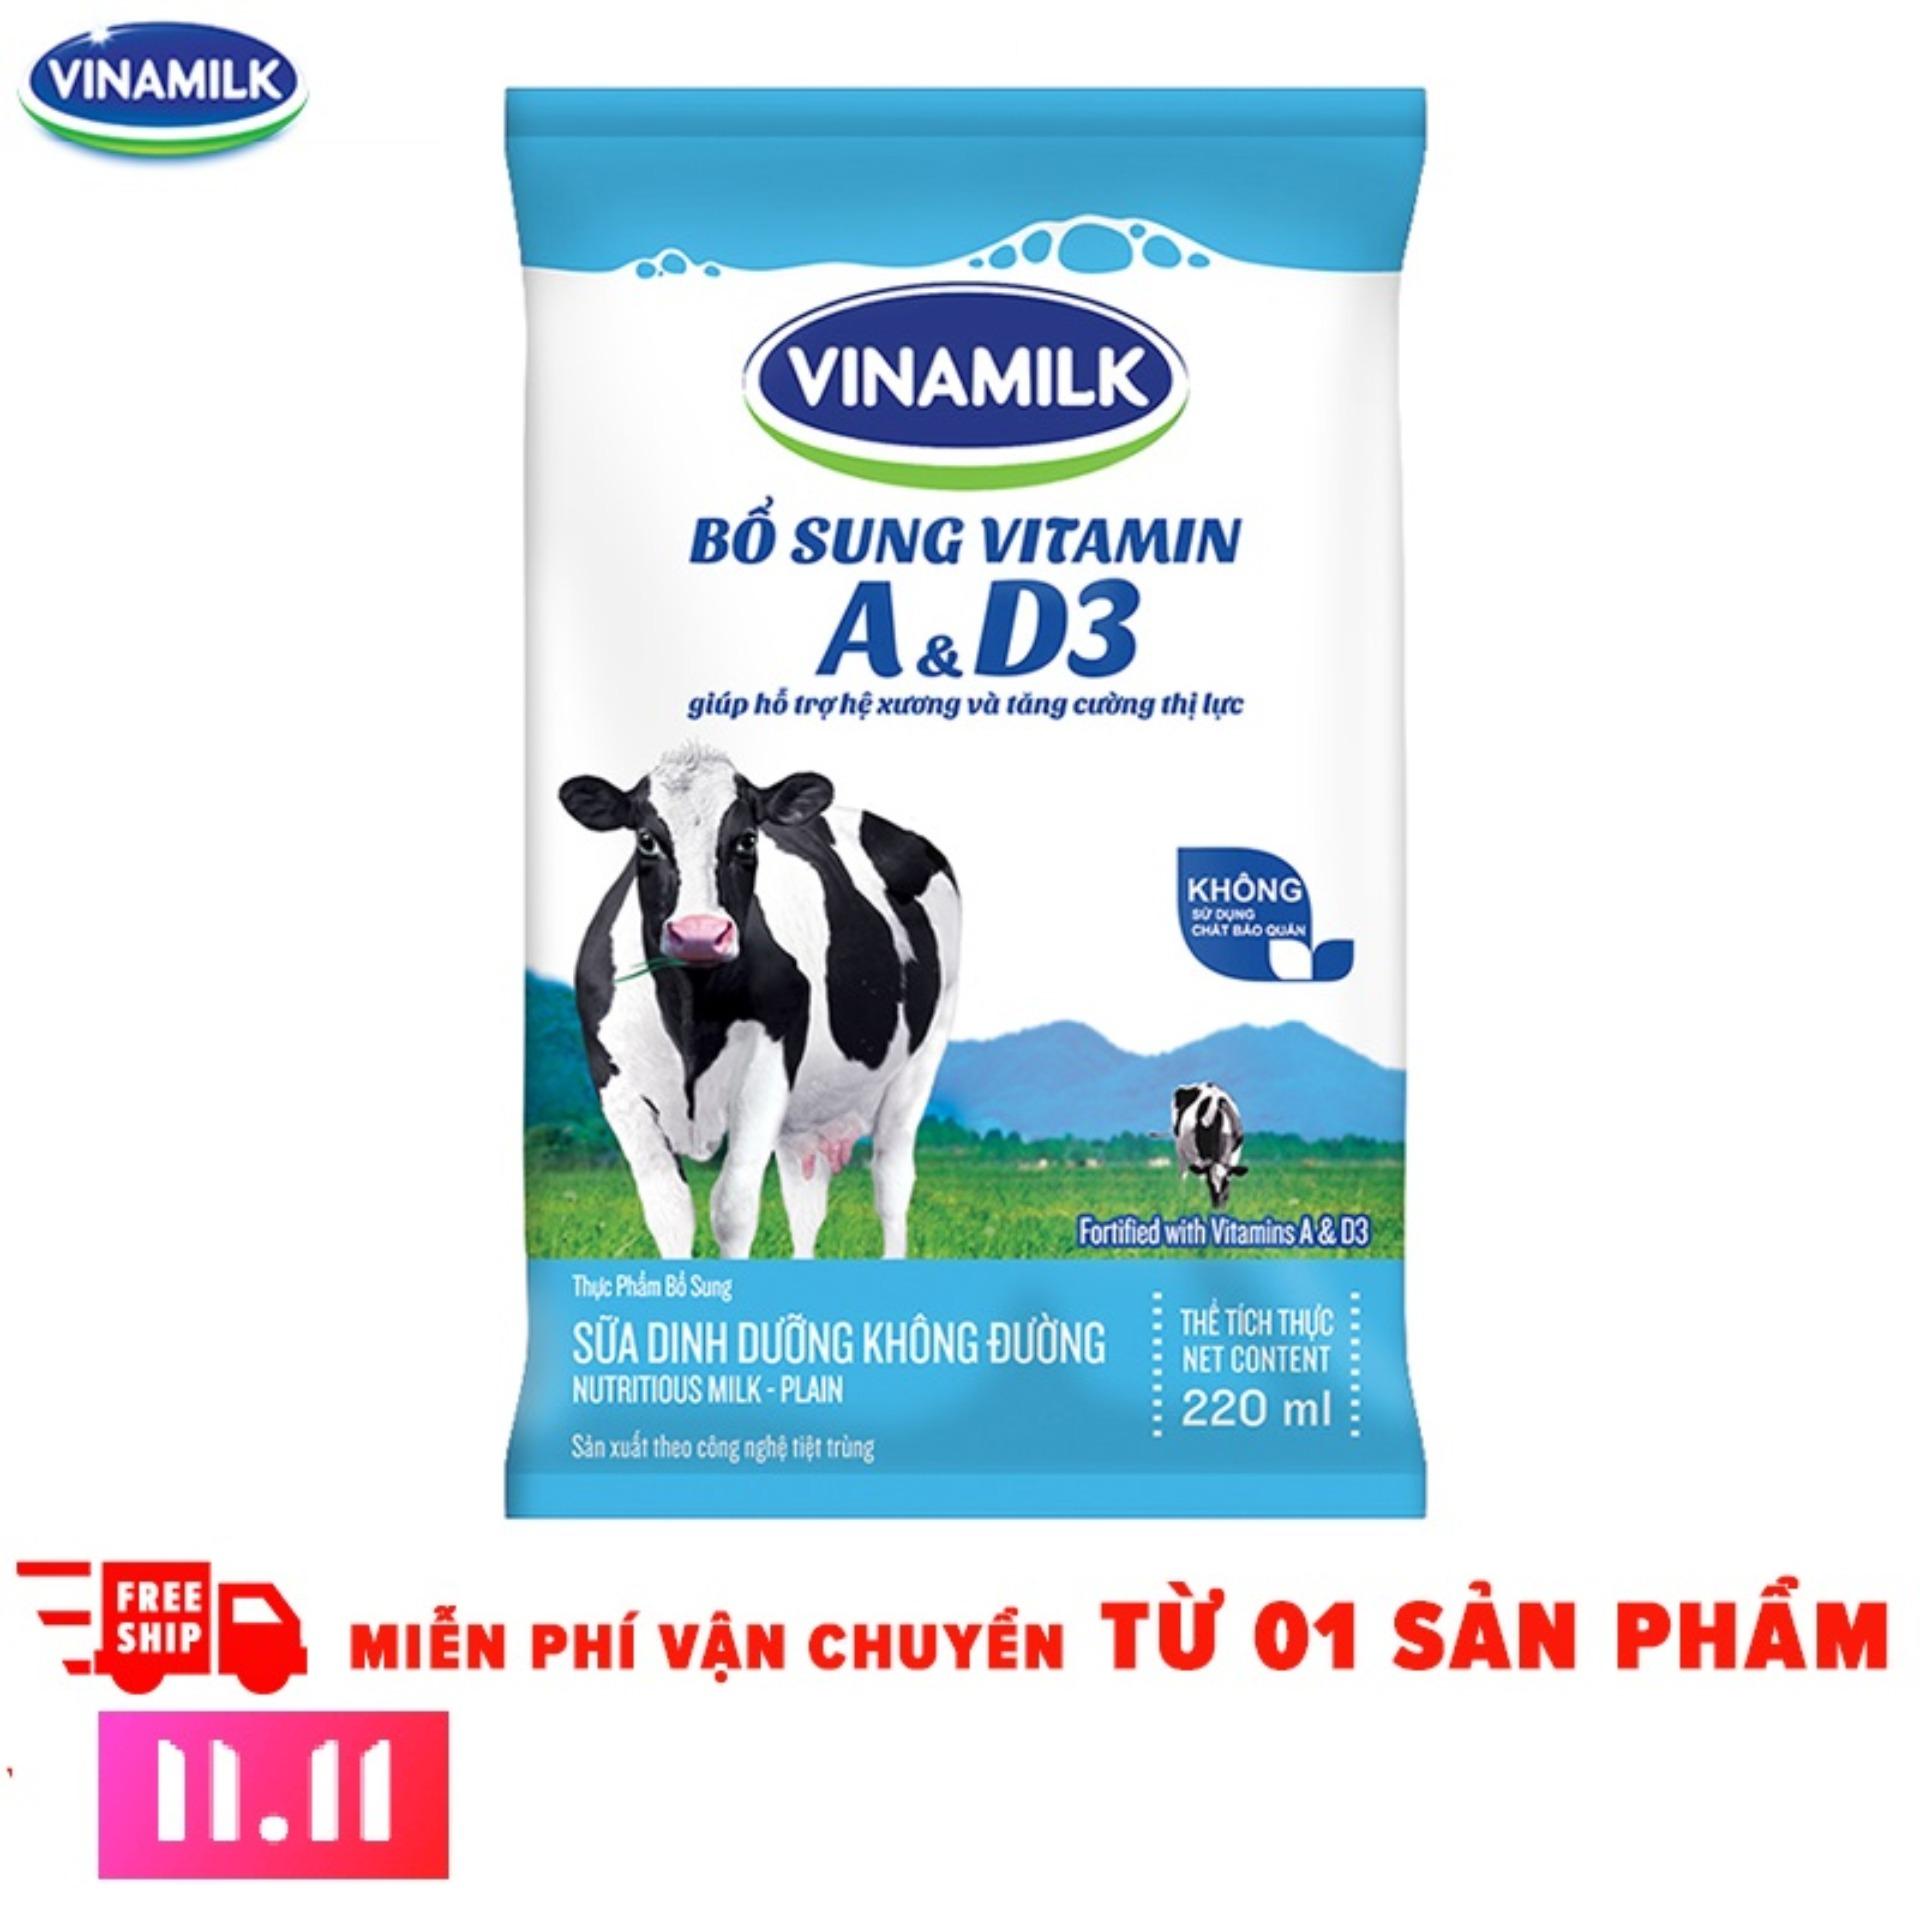 11.11 Deal độc quyền - Thùng 48 Bịch Sữa tiệt trùng Vinamilk không đường 220ml